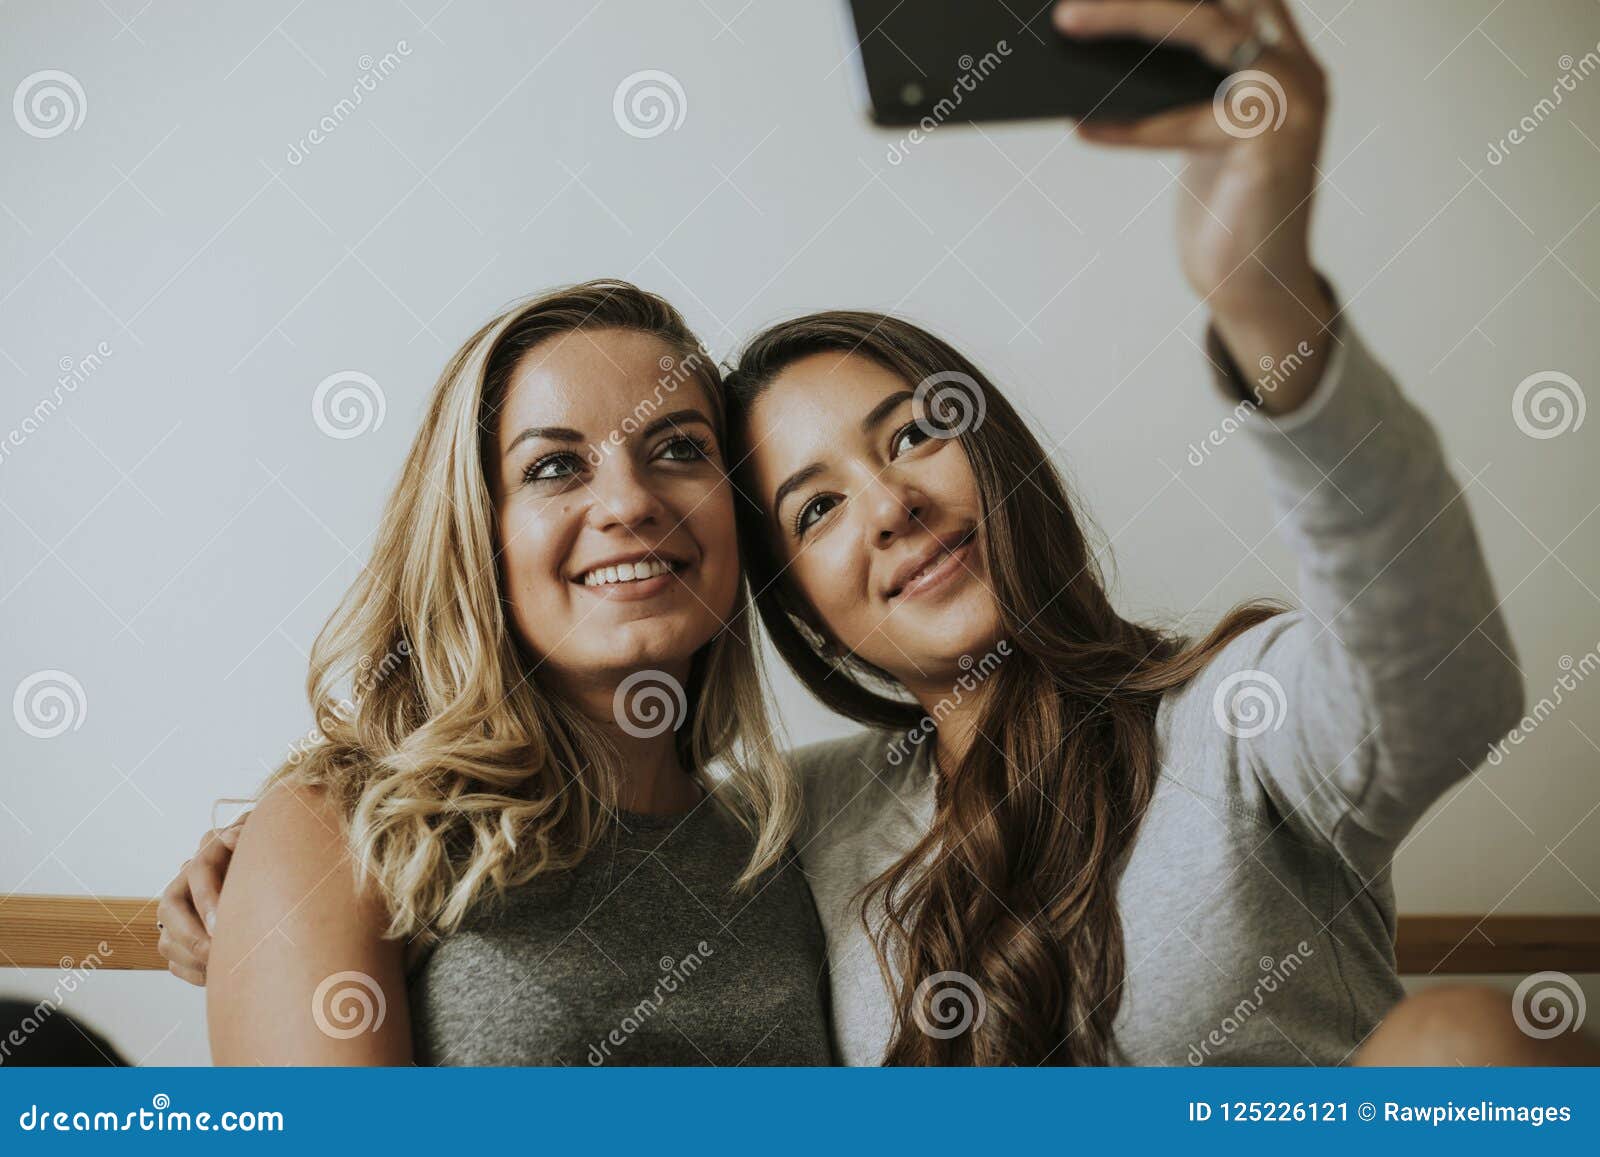 teen lesbian homemade selfie